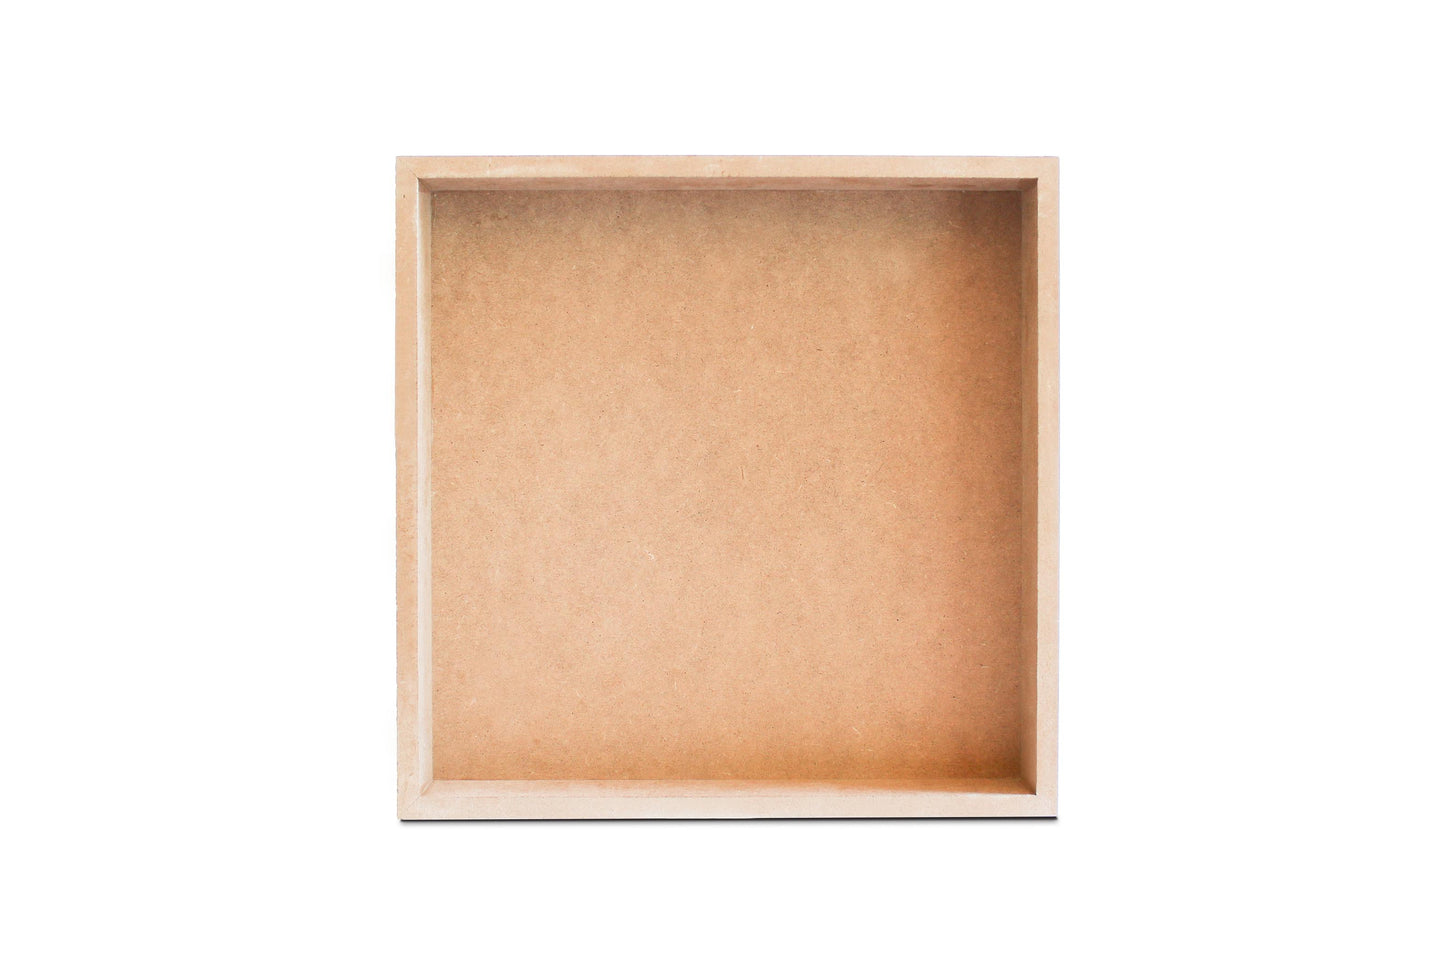 Minimalistic B&W Texas Textured Yall | Wood Block | Eaches | Min 2